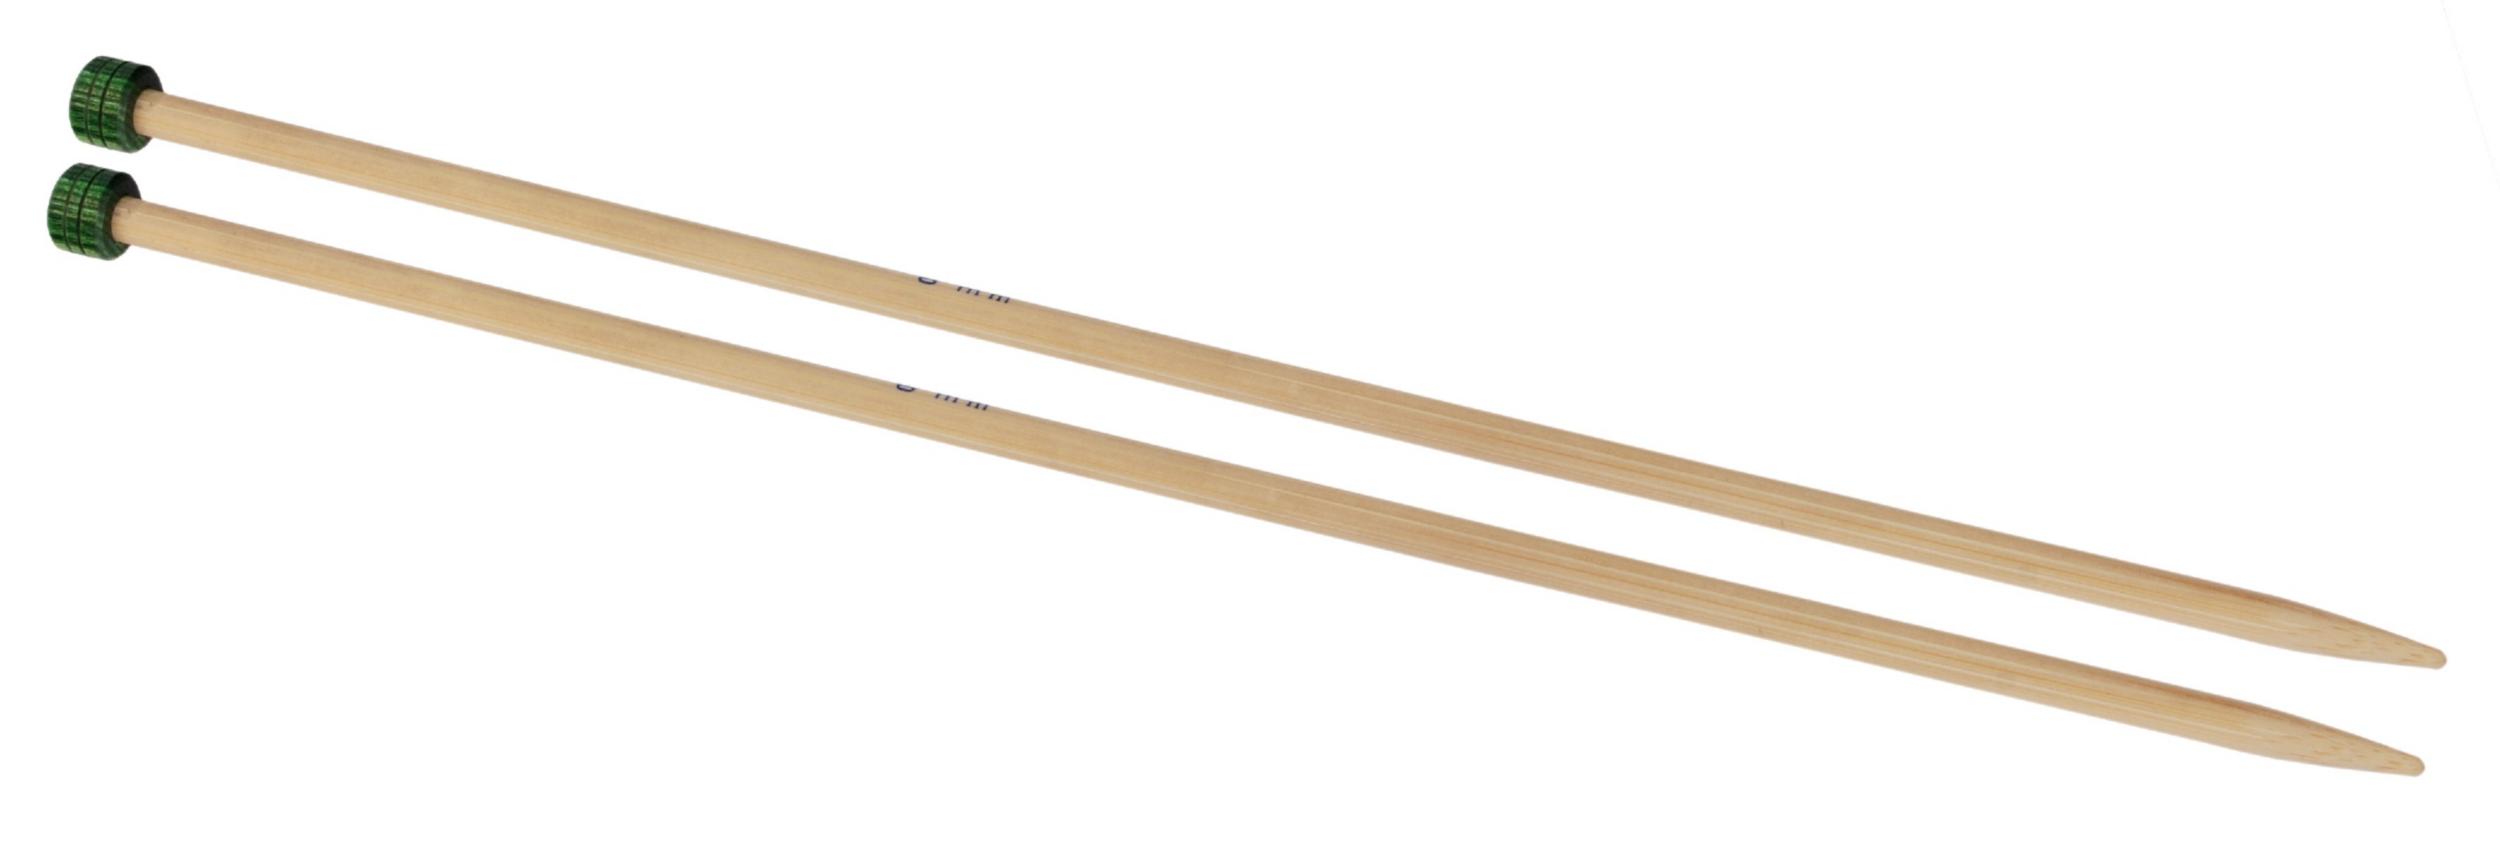 22354 Спиці прямі Bamboo KnitPro, 33 см, 2.75 мм